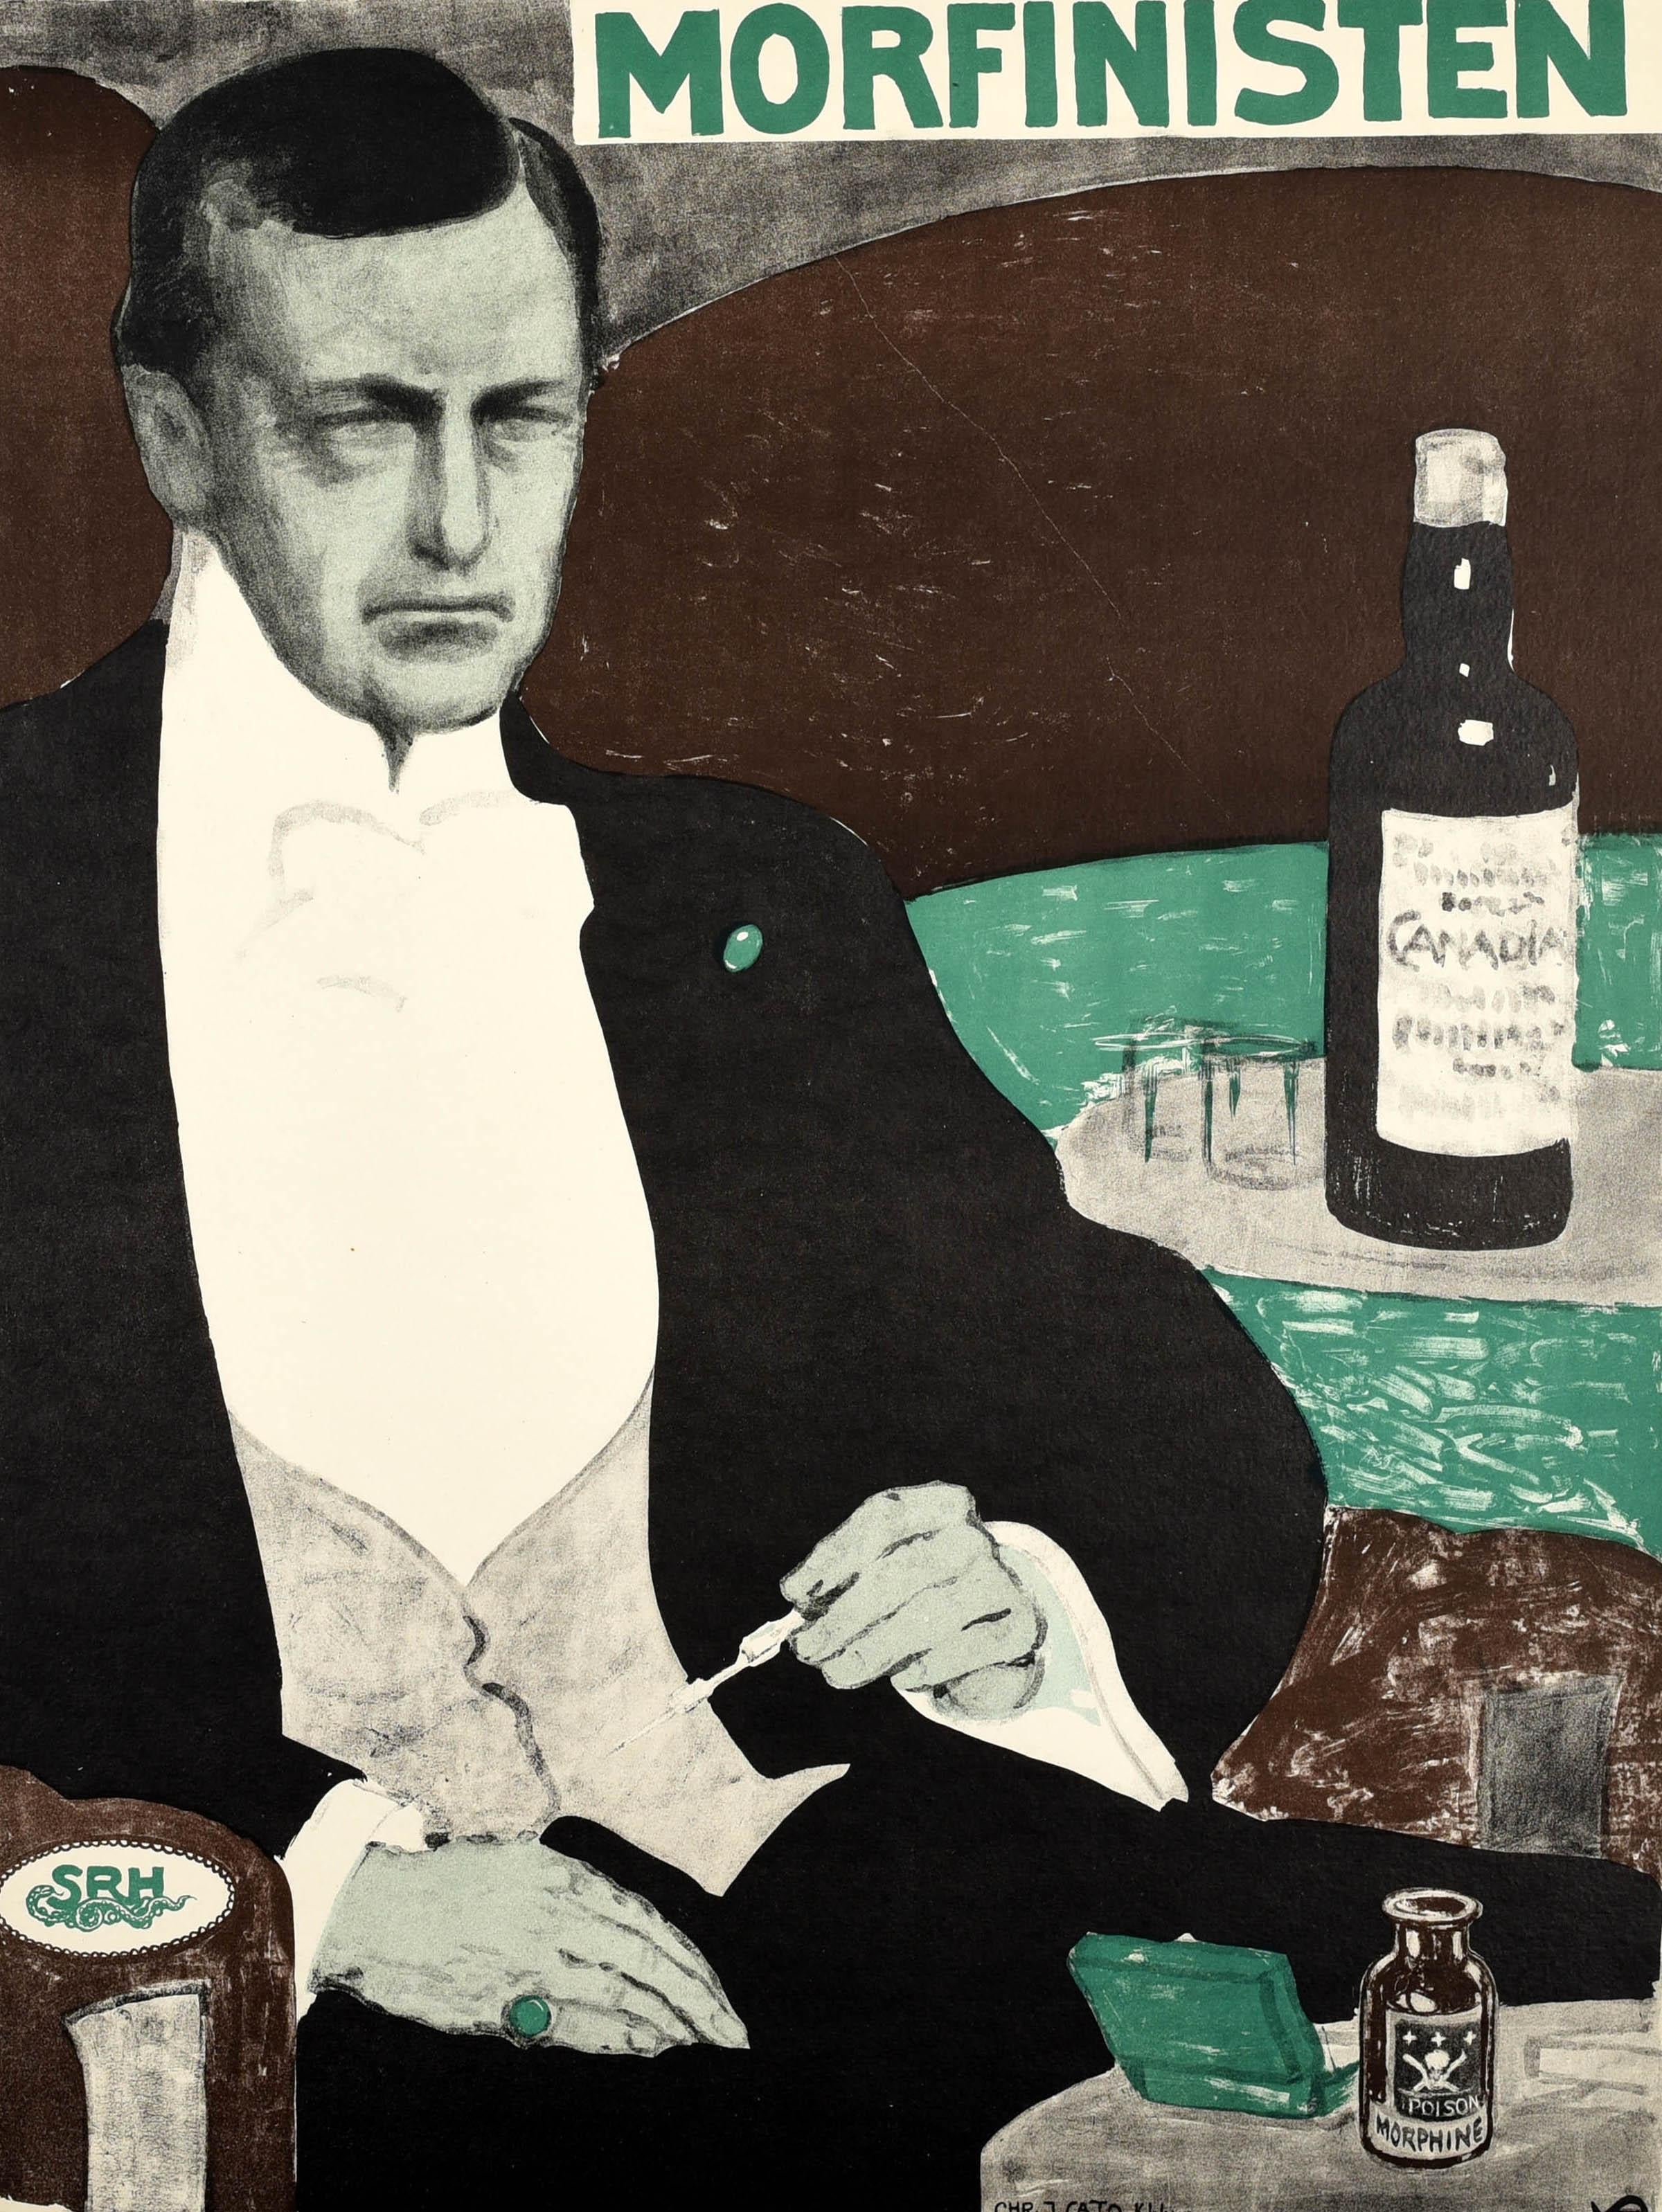 Originales antikes Filmplakat für den Kurzfilm The Morphine Takers / Morfinisten aus dem Jahr 1911 unter der Regie von Louis von Kohl und mit Lili Beck, Alfred Cohn und Vera Fjelstrup in den Hauptrollen. Es zeigt einen gut gekleideten,